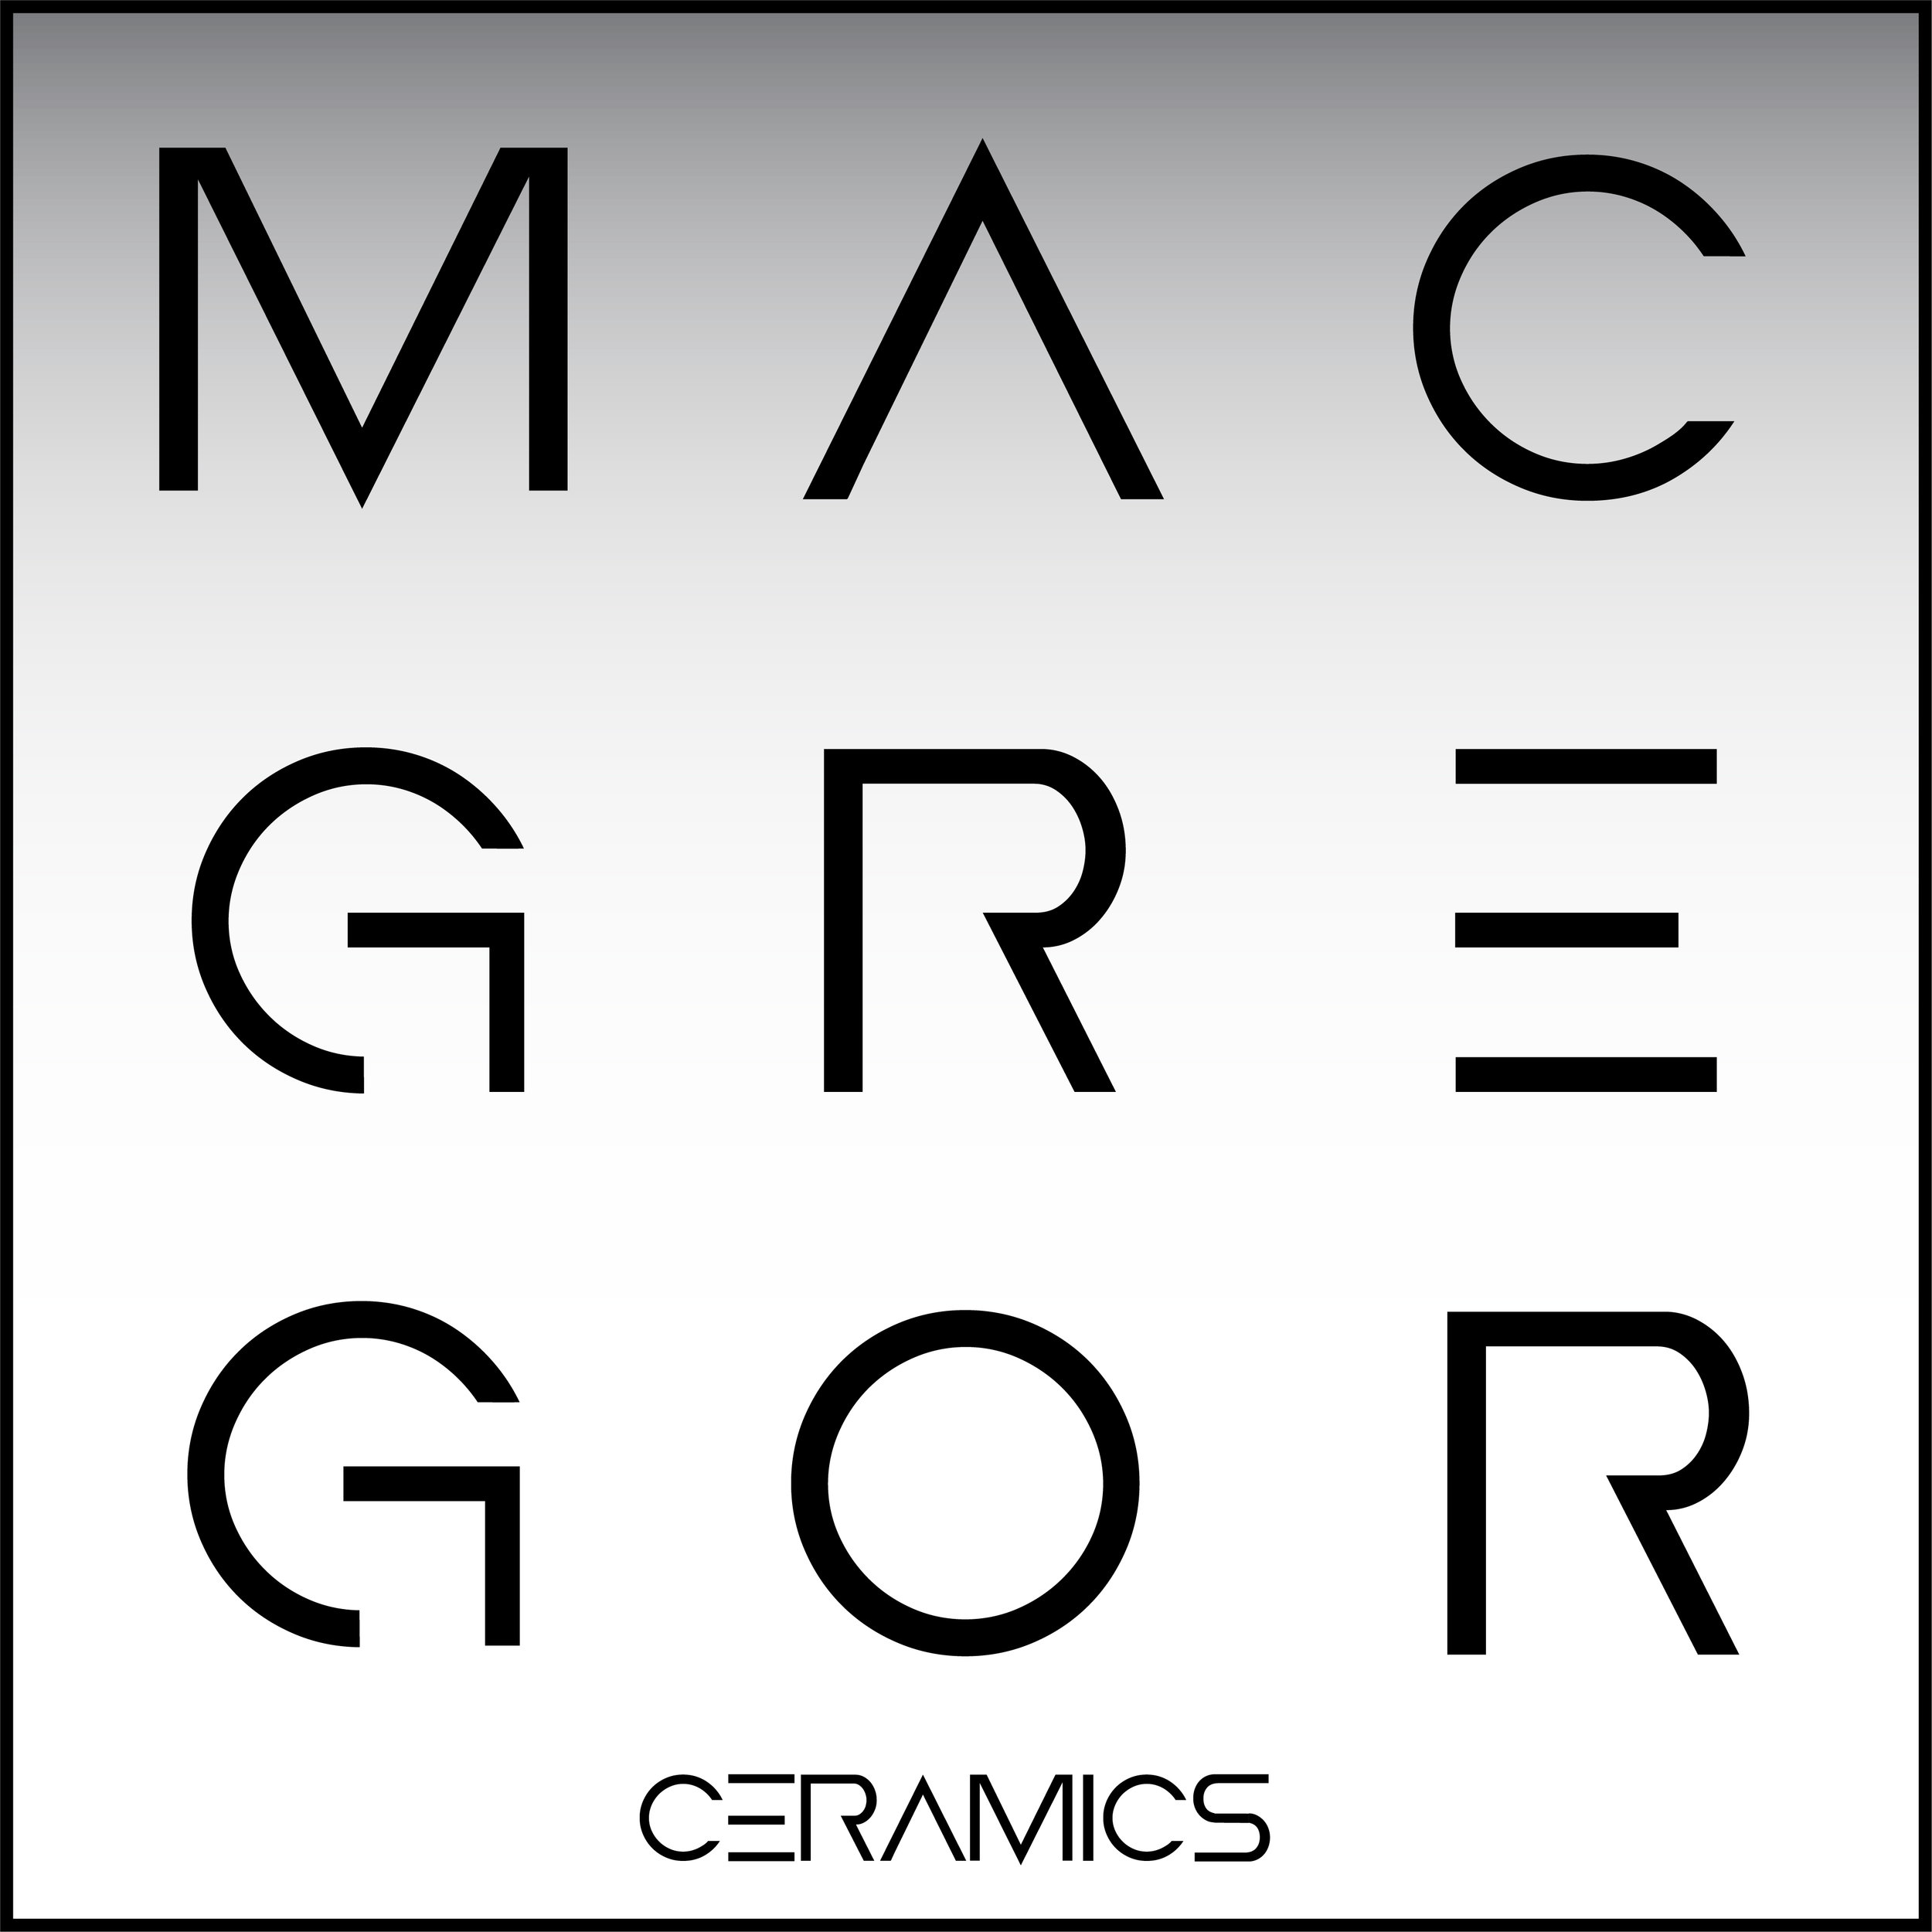 MACGREGOR Ceramics